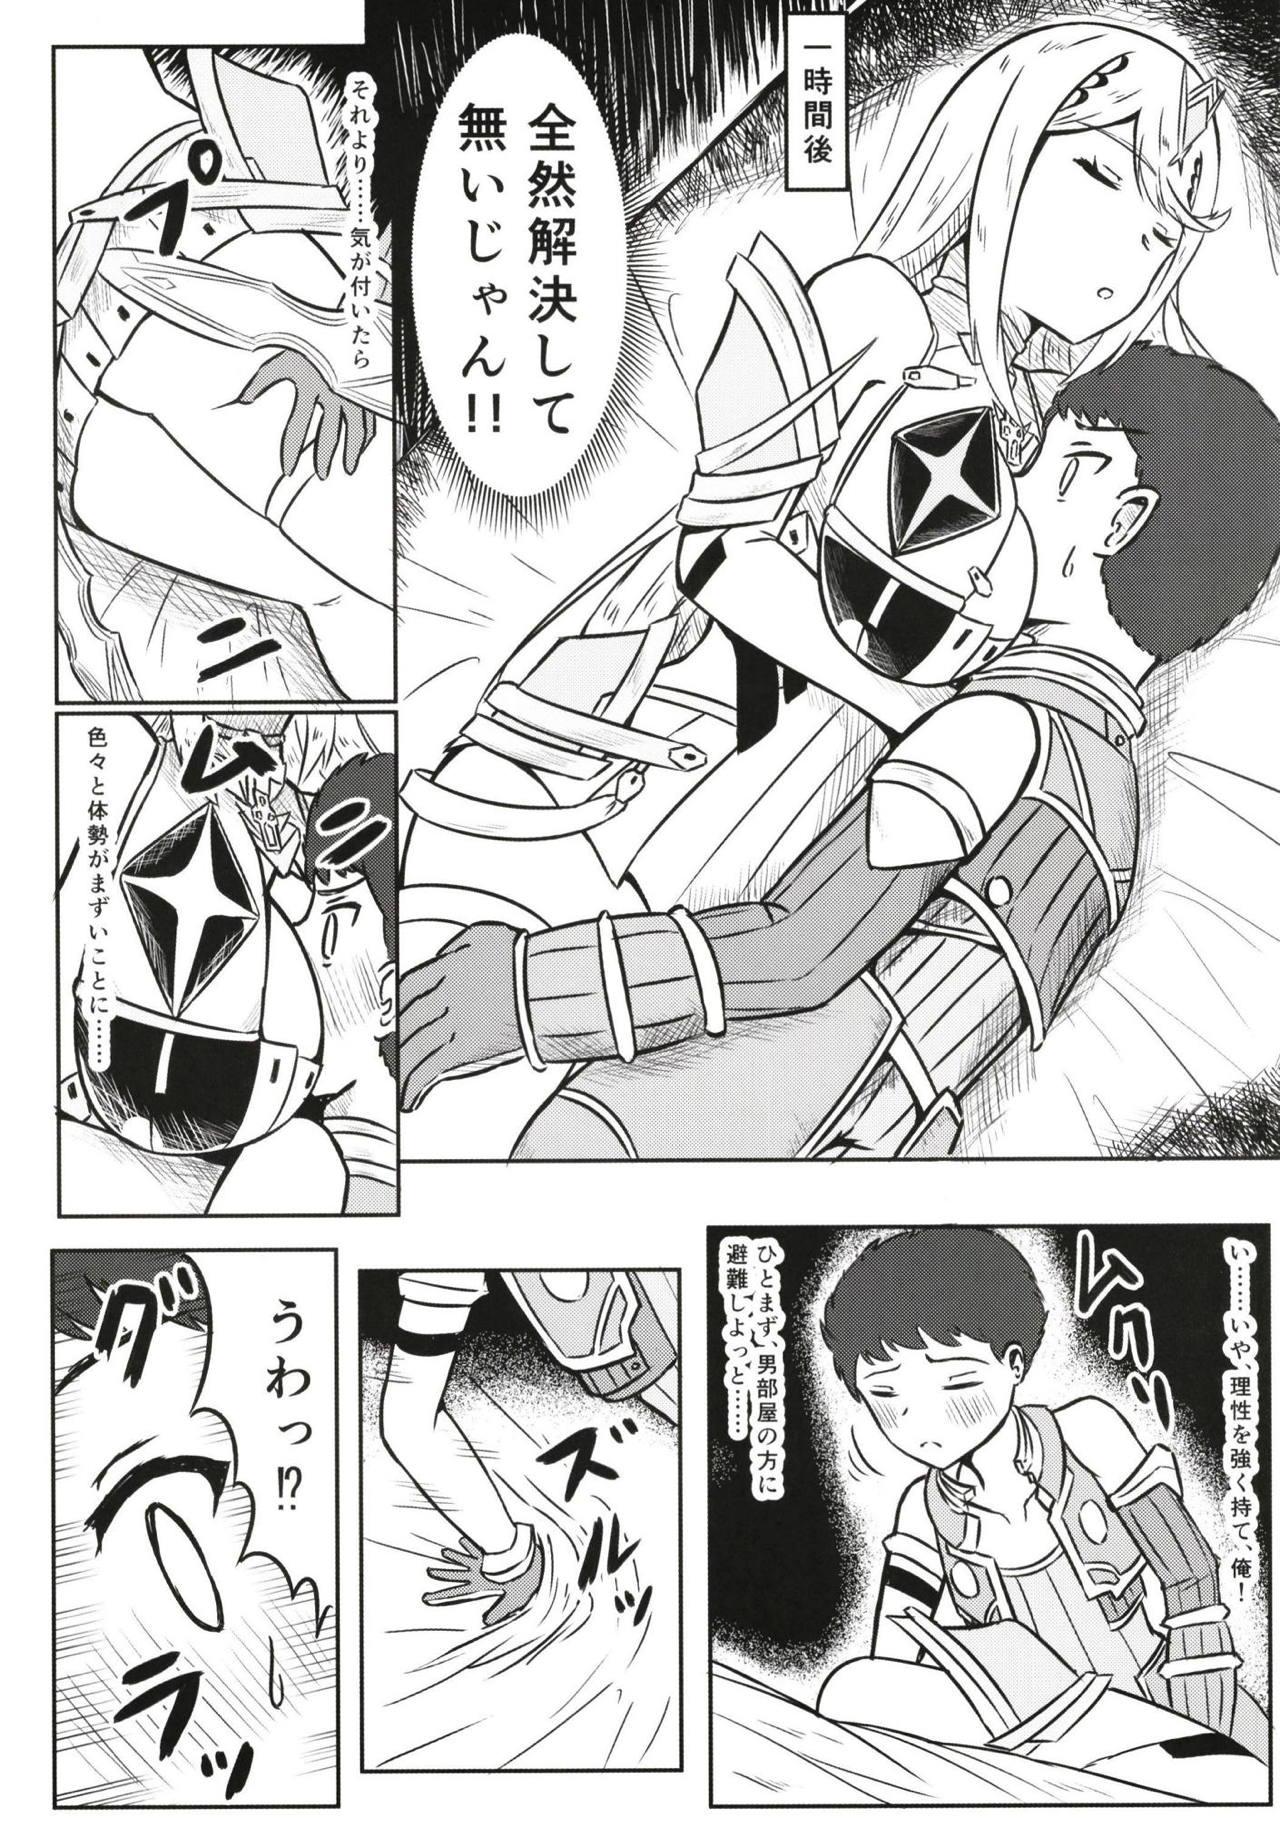 Interacial Yoru no Seihai - Xenoblade chronicles 2 Behind - Page 4